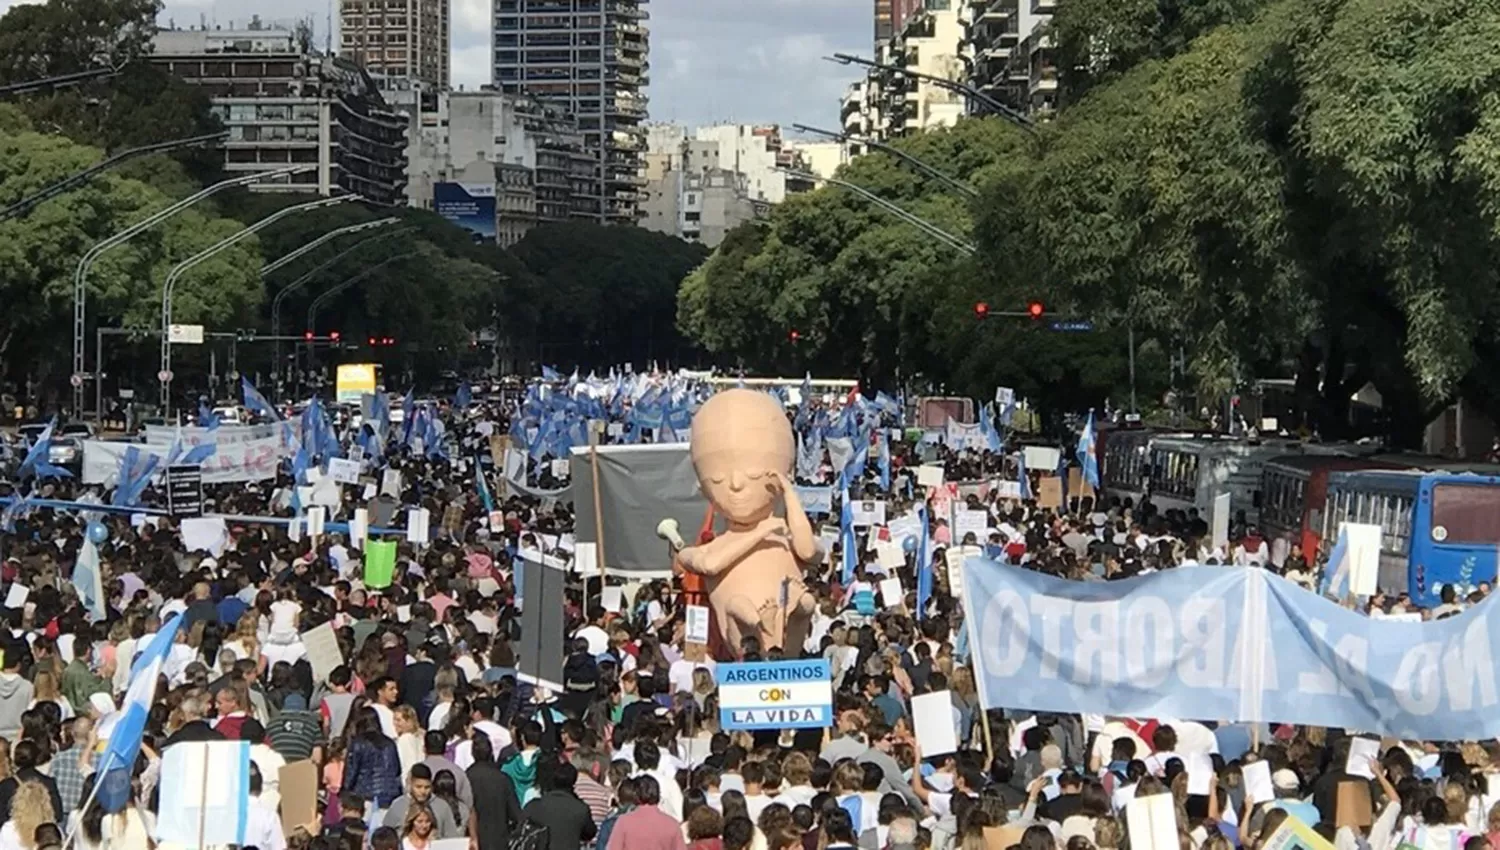 EN BUENOS AIRES. Una multitud marcha contra la despenalización del aborto. FOTO TOMADA DE CLARIN.COM